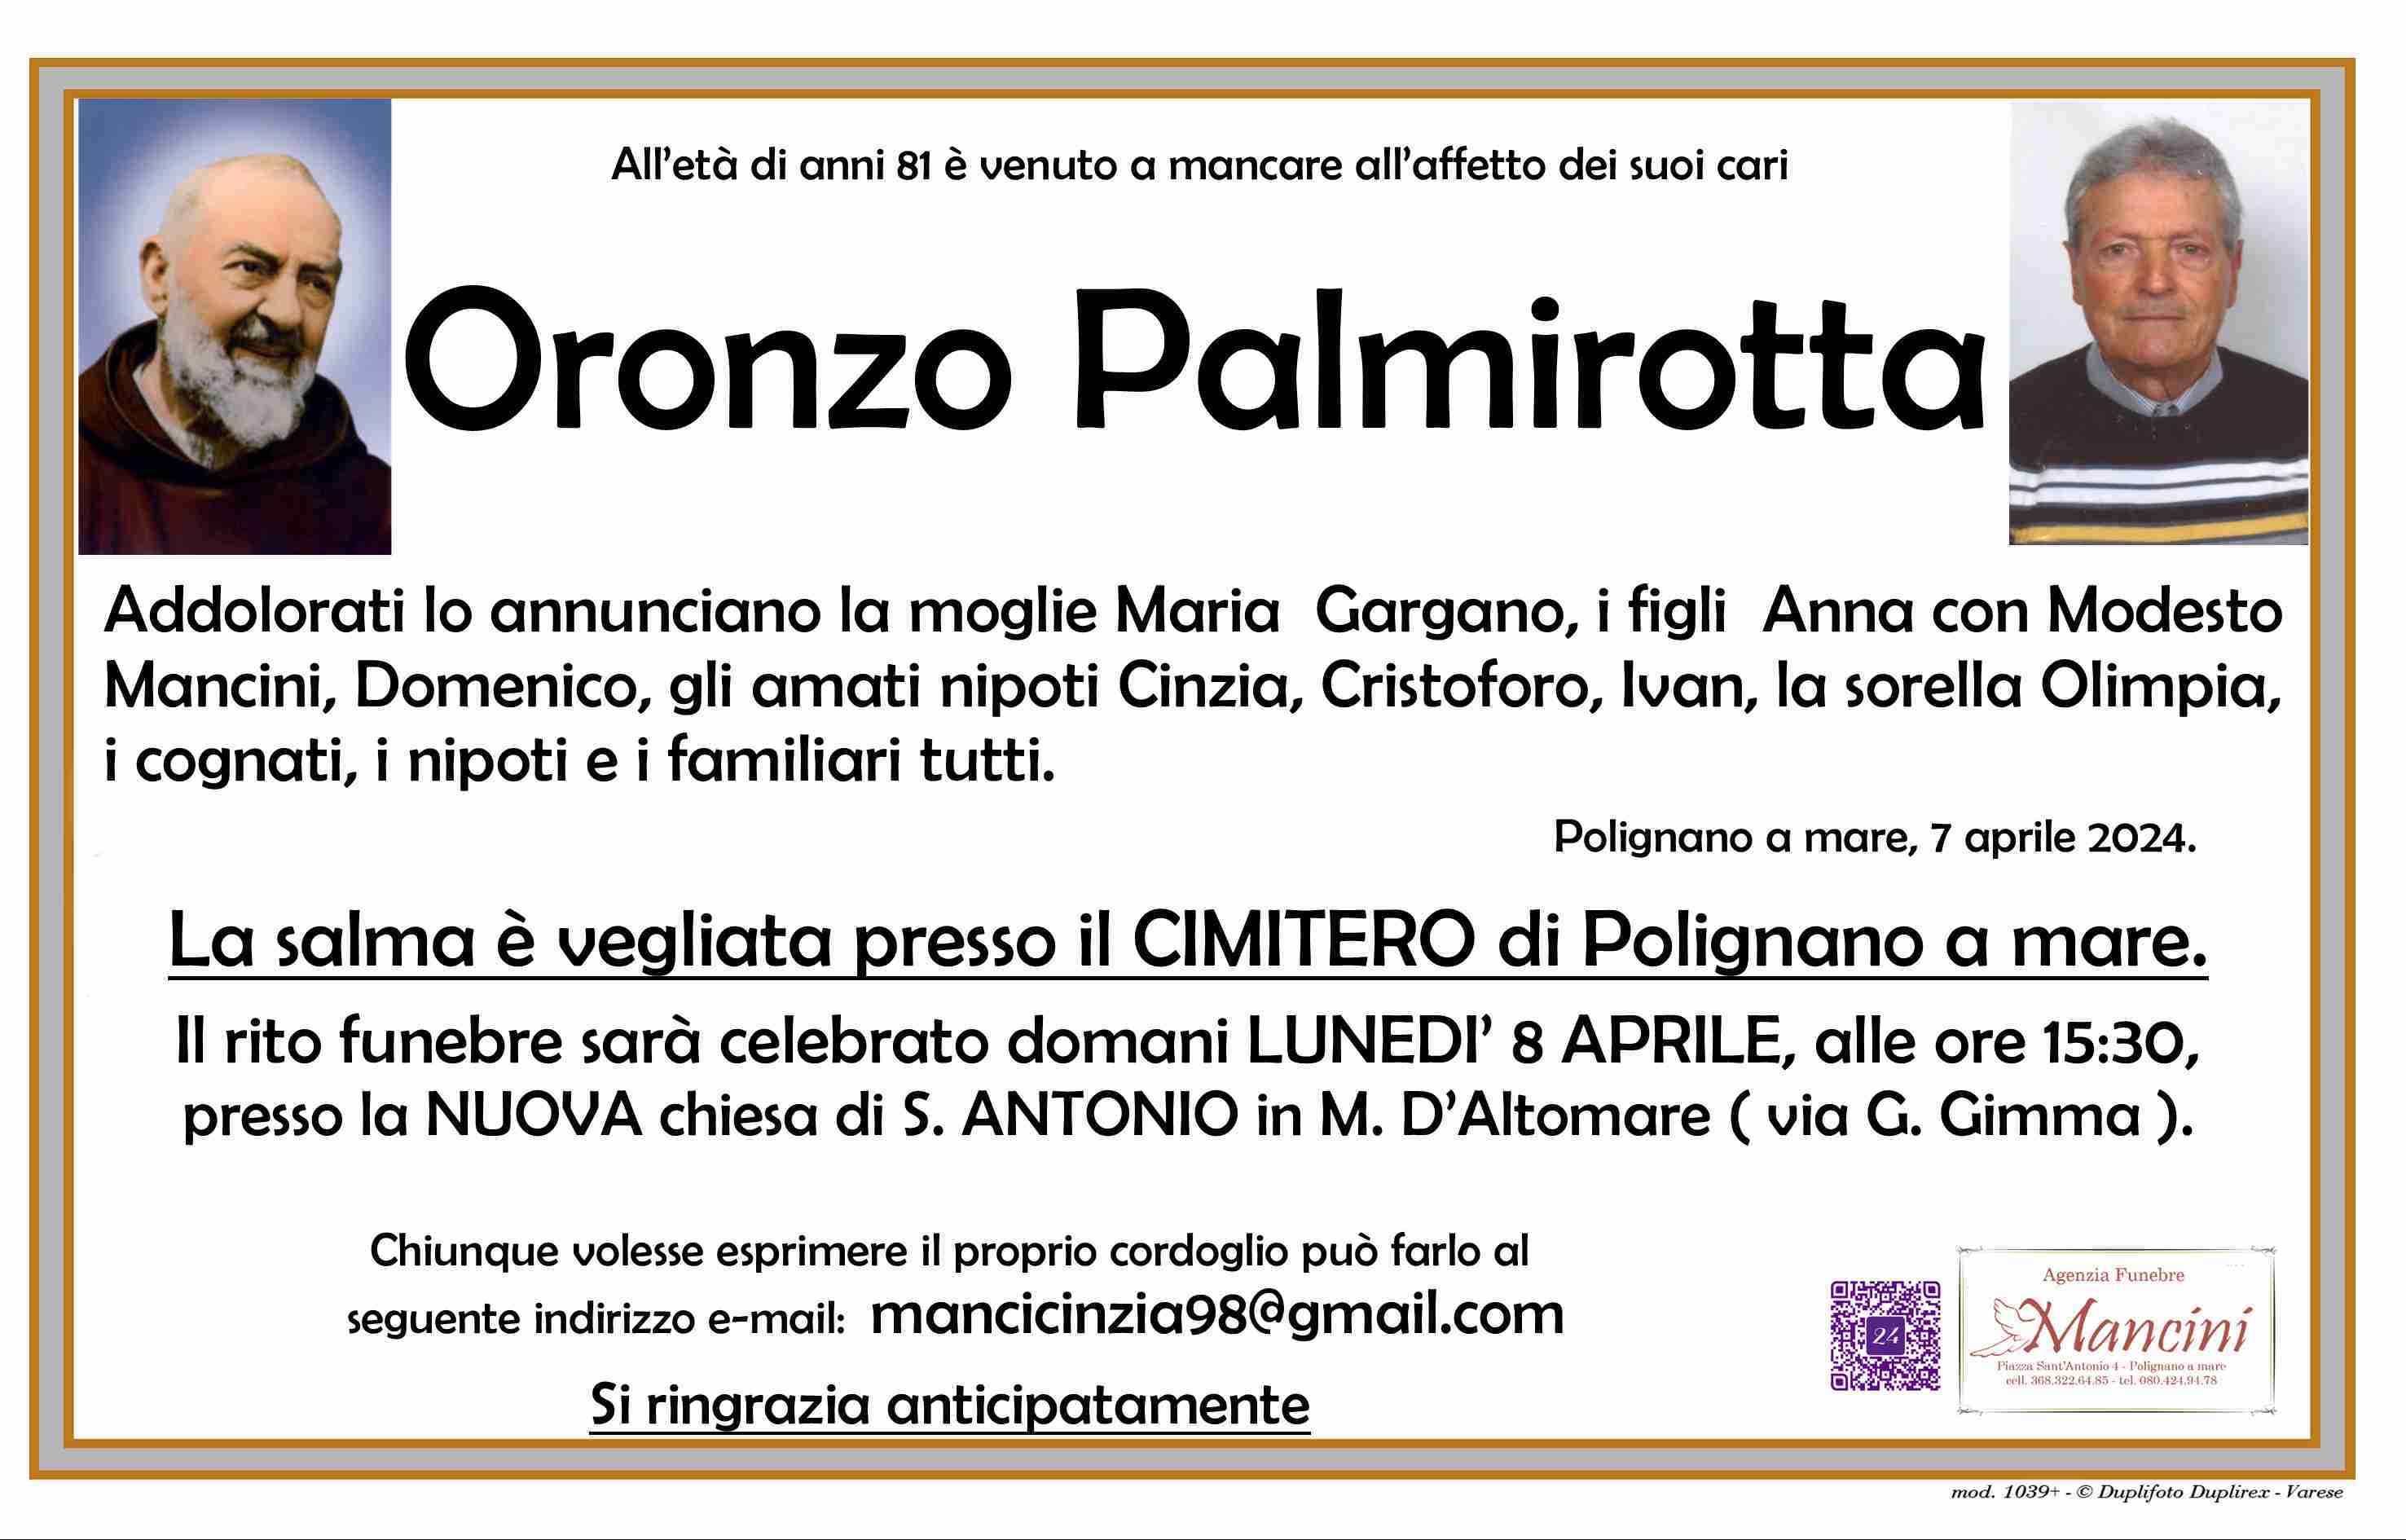 Oronzo Palmrotta